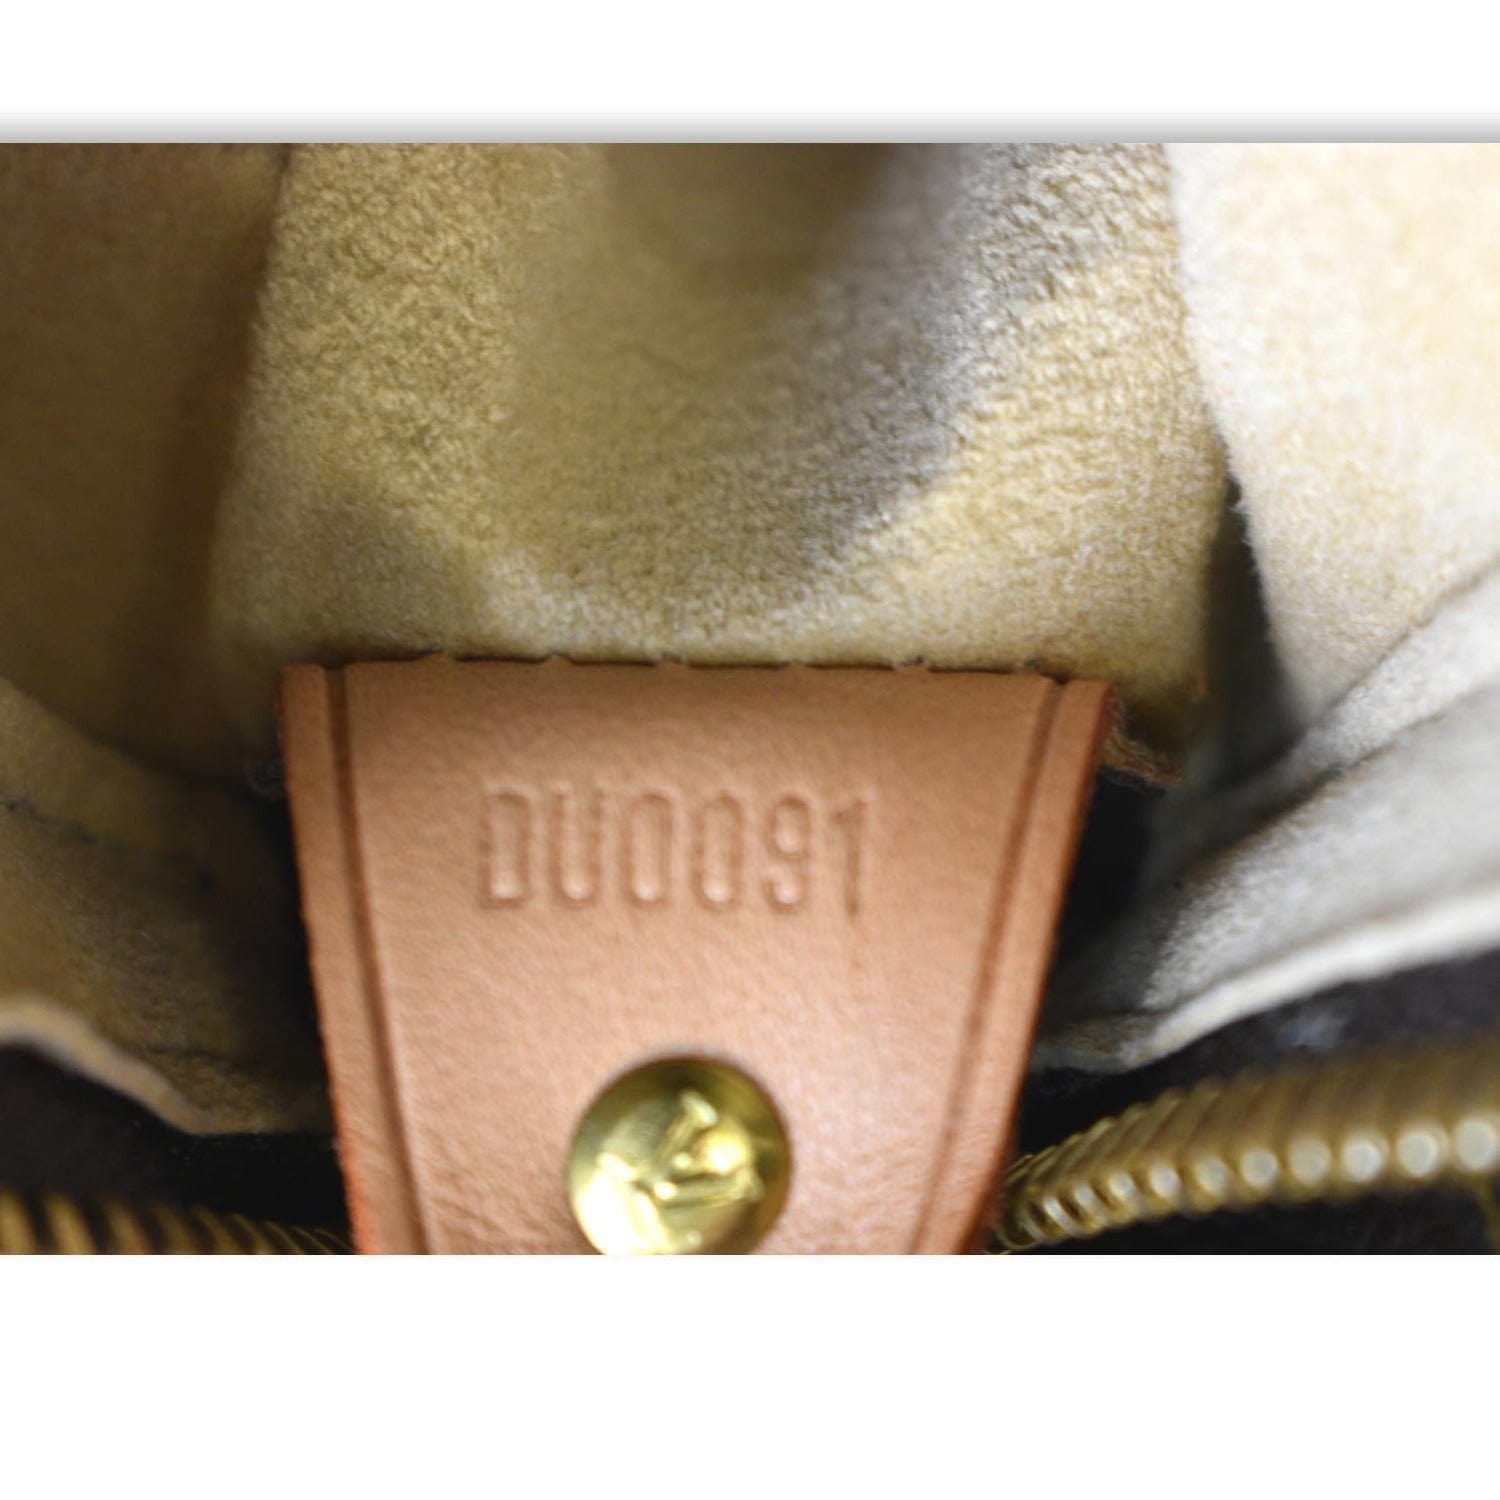 Louis - M51145 – dct - Vuitton - Shoulder - Looping - Золотистые палантины Louis  Vuitton - Bag - ep_vintage luxury Store - Monogram - GM